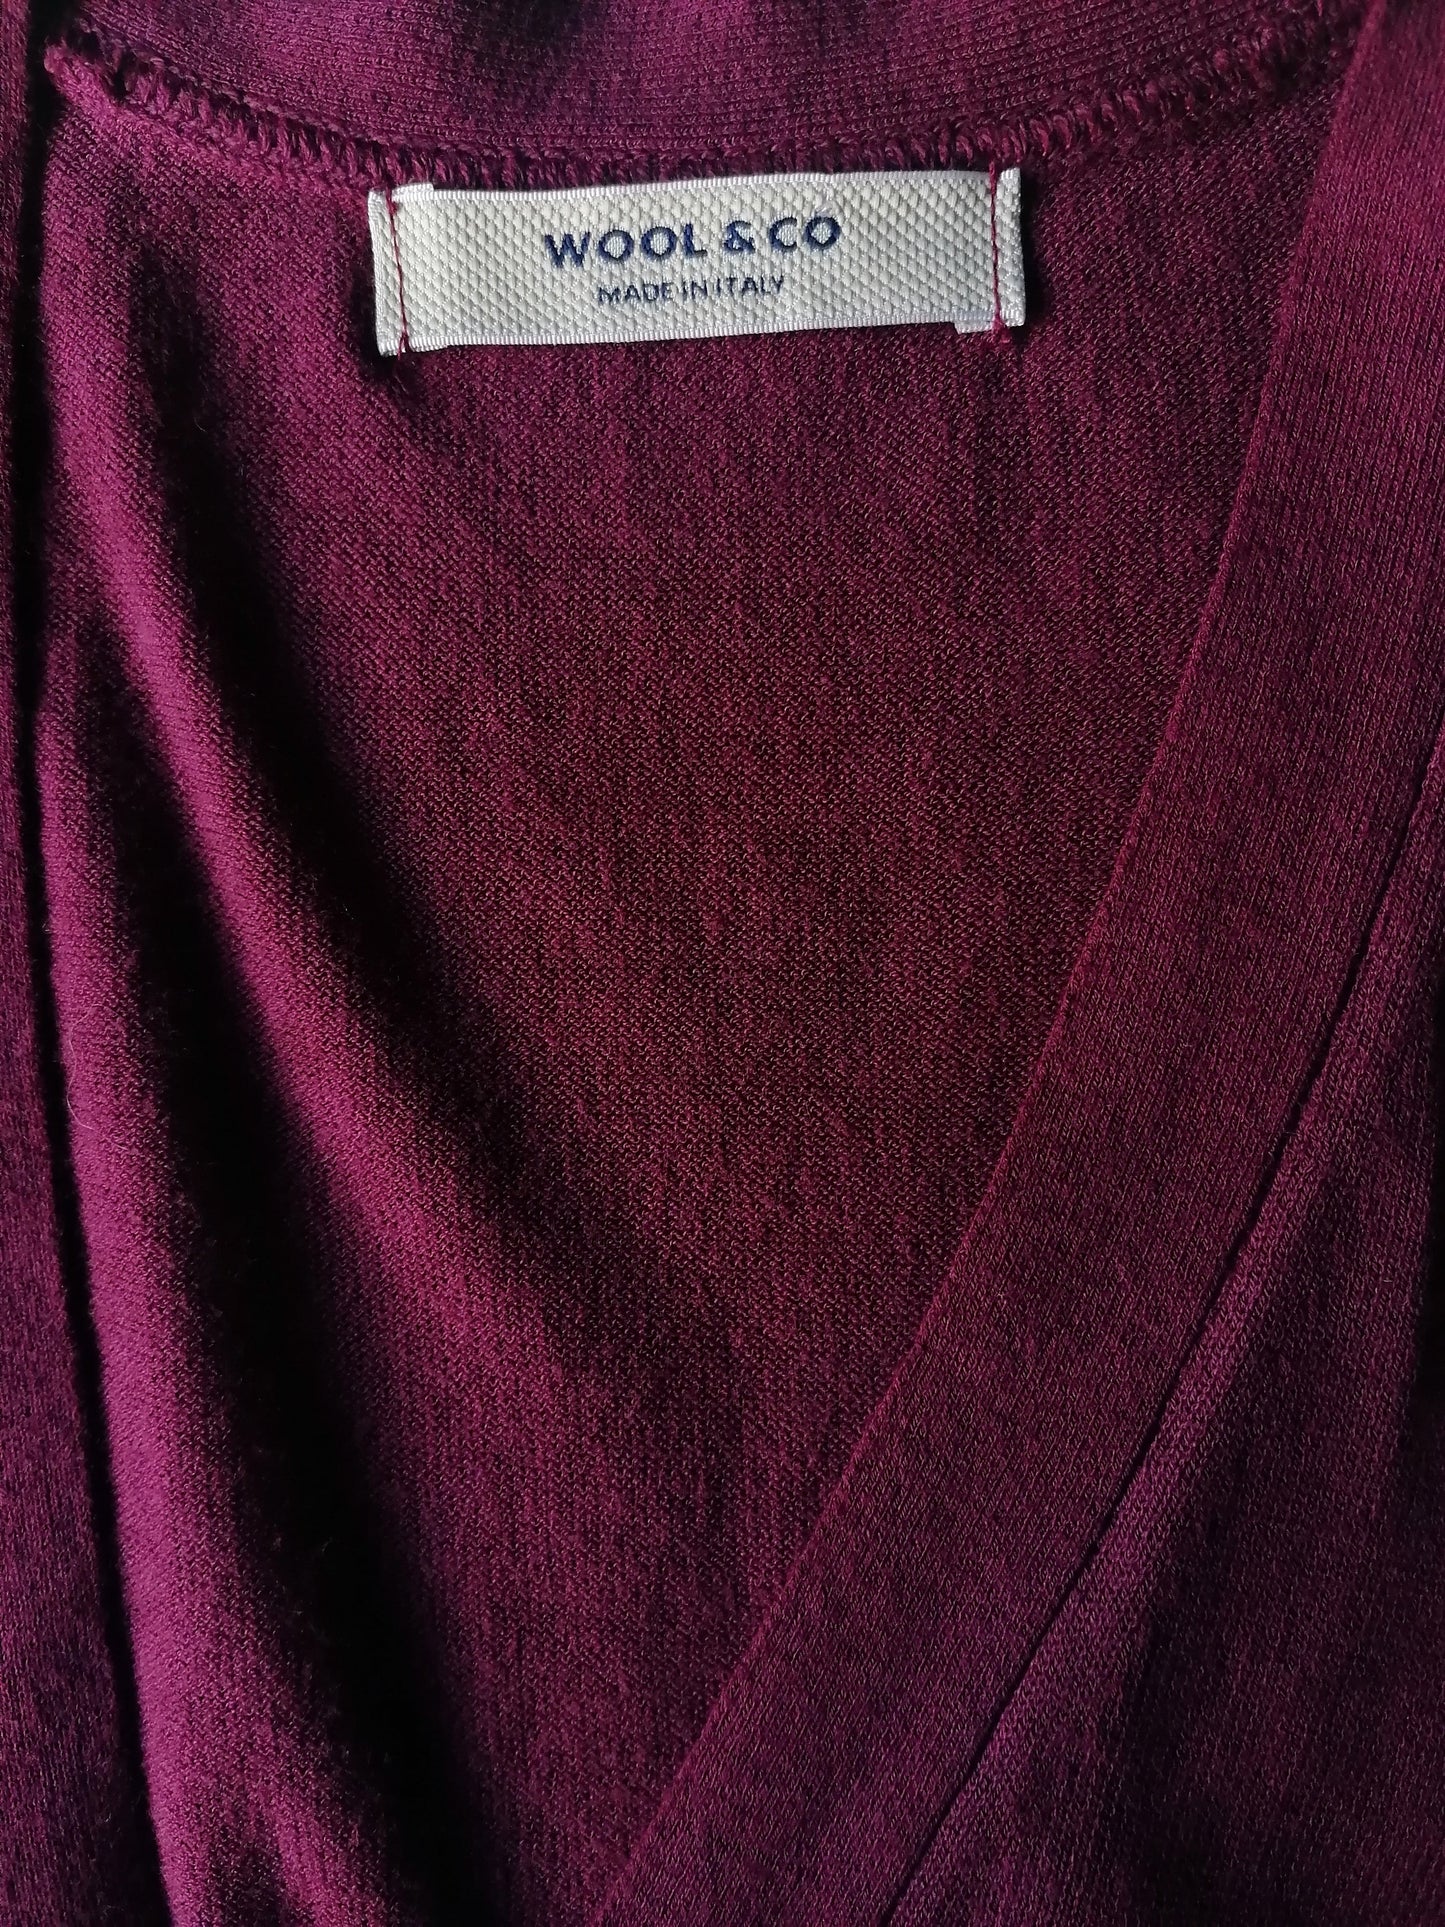 Wool & Co Cotton Whitcoat. Bordeaux colorato. Taglia S.